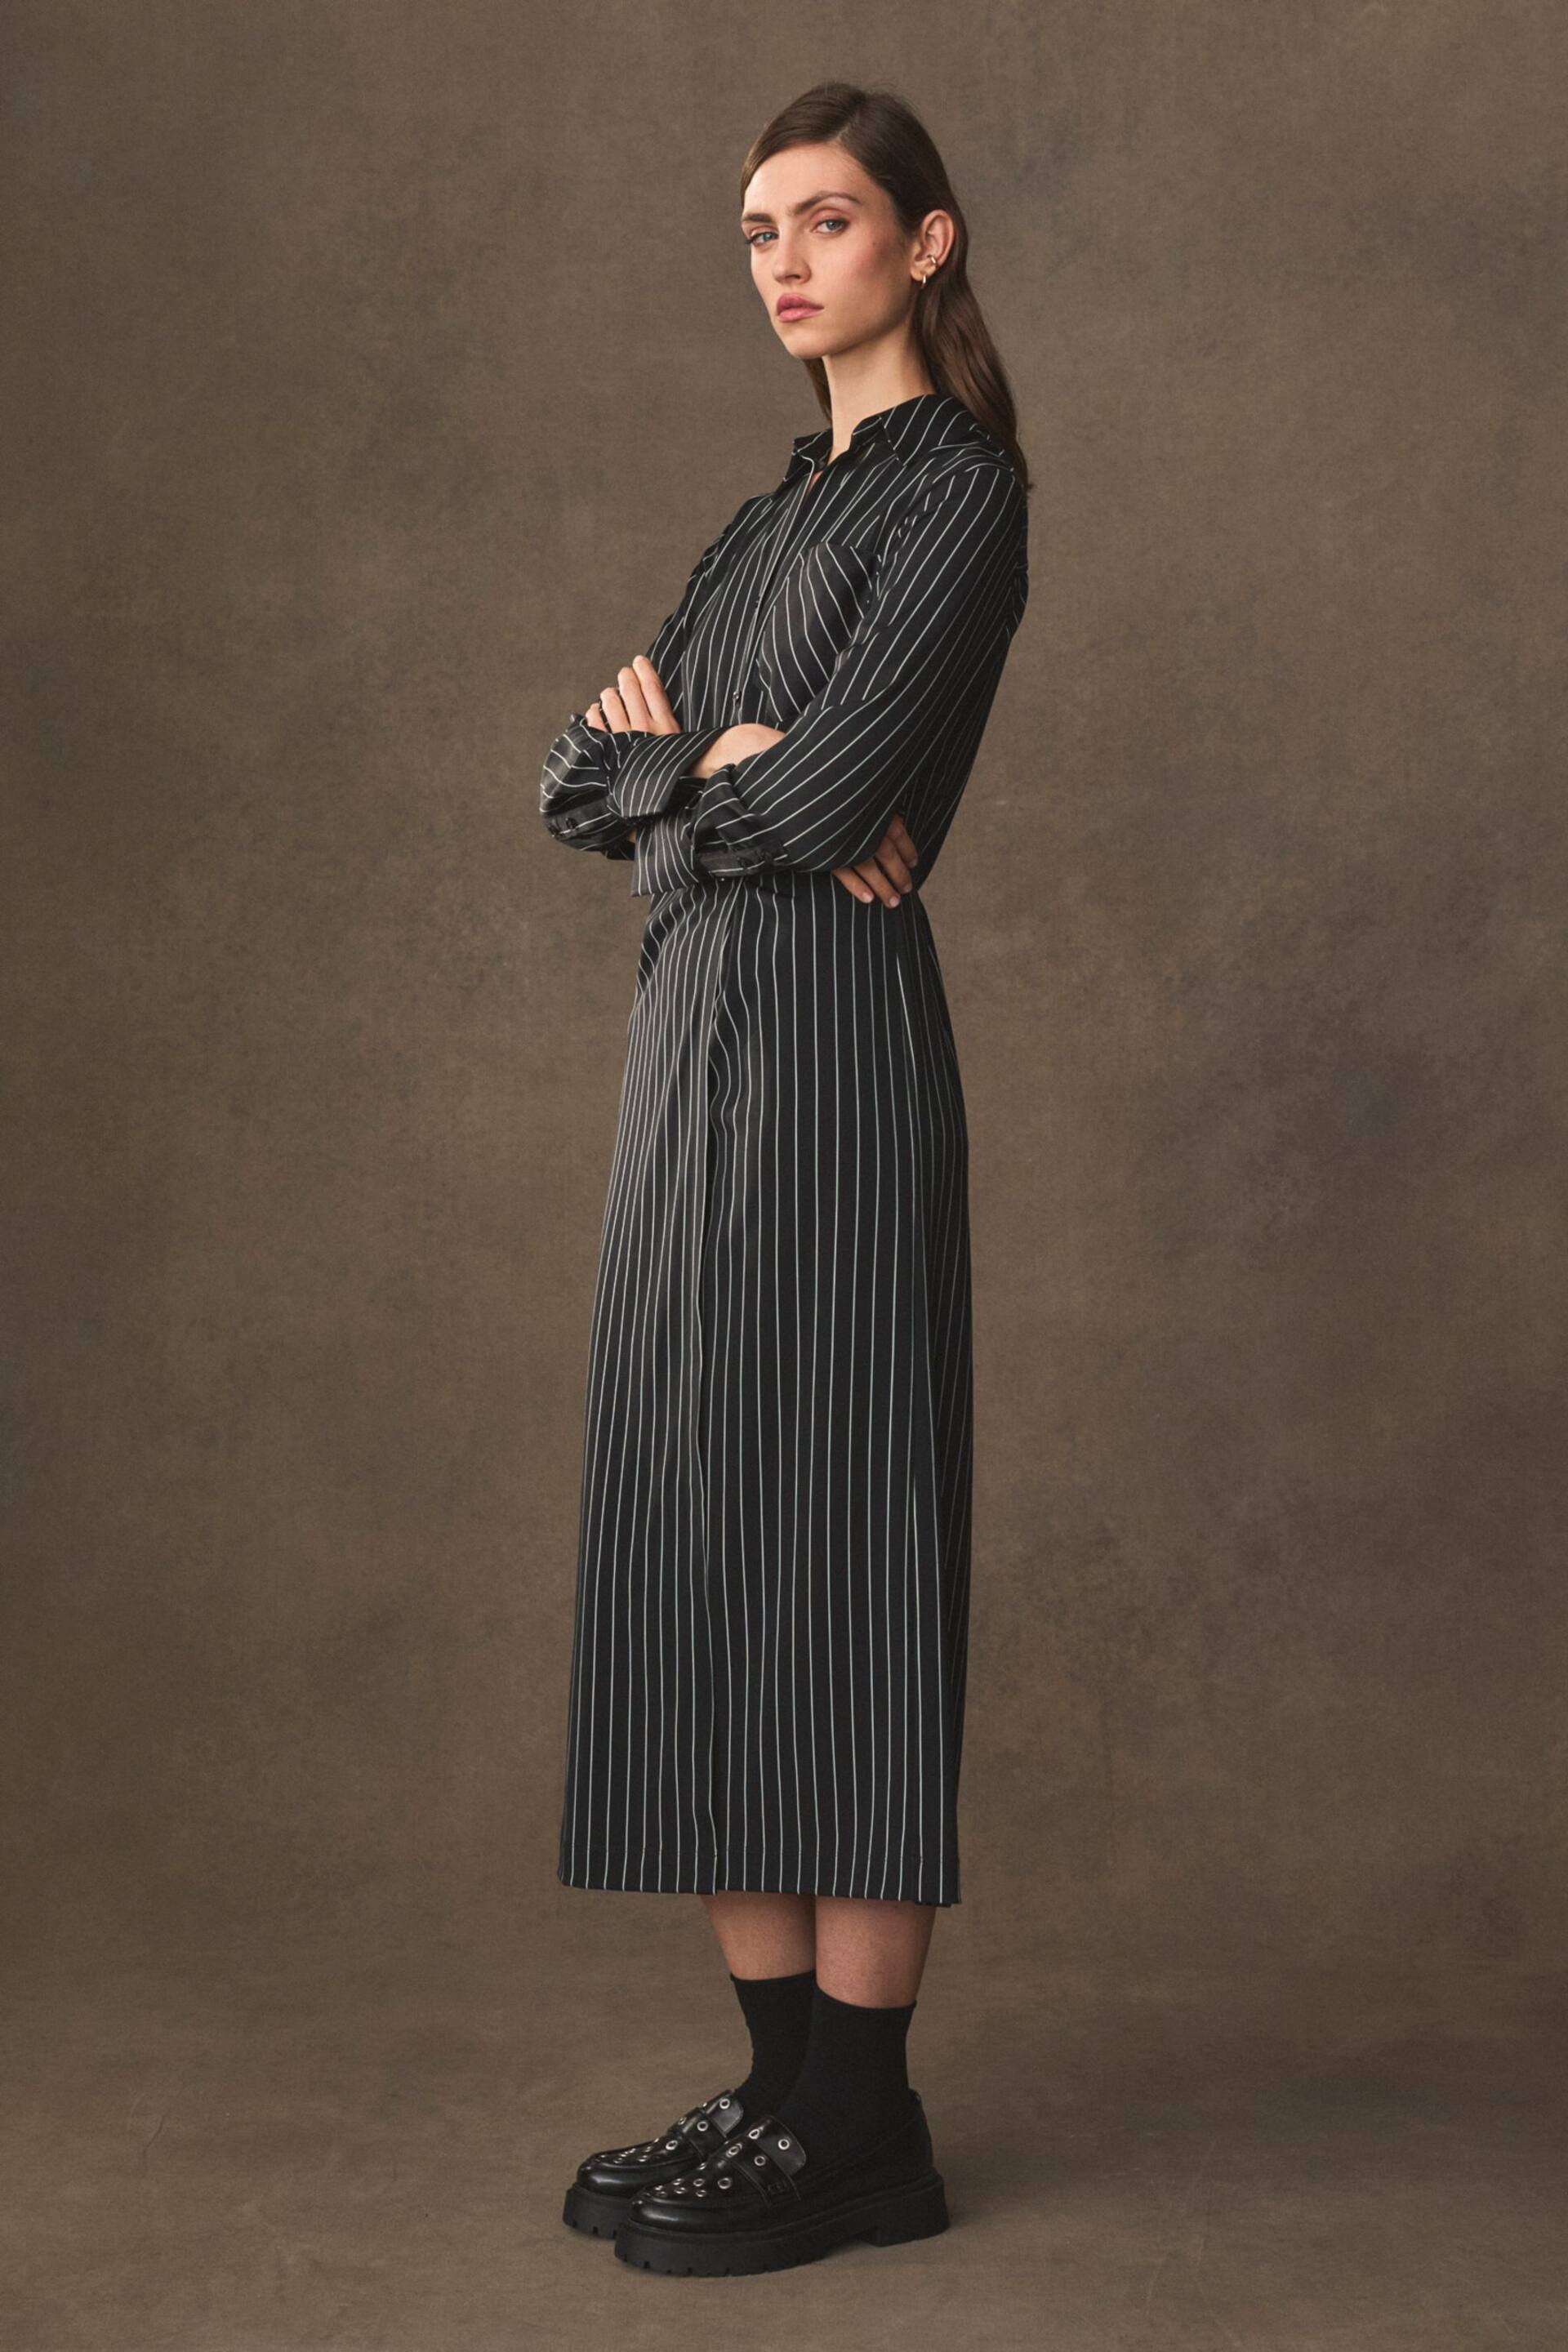 Black/White Stripe Asymmetric Pinstripe Shirt Dress - Image 2 of 7